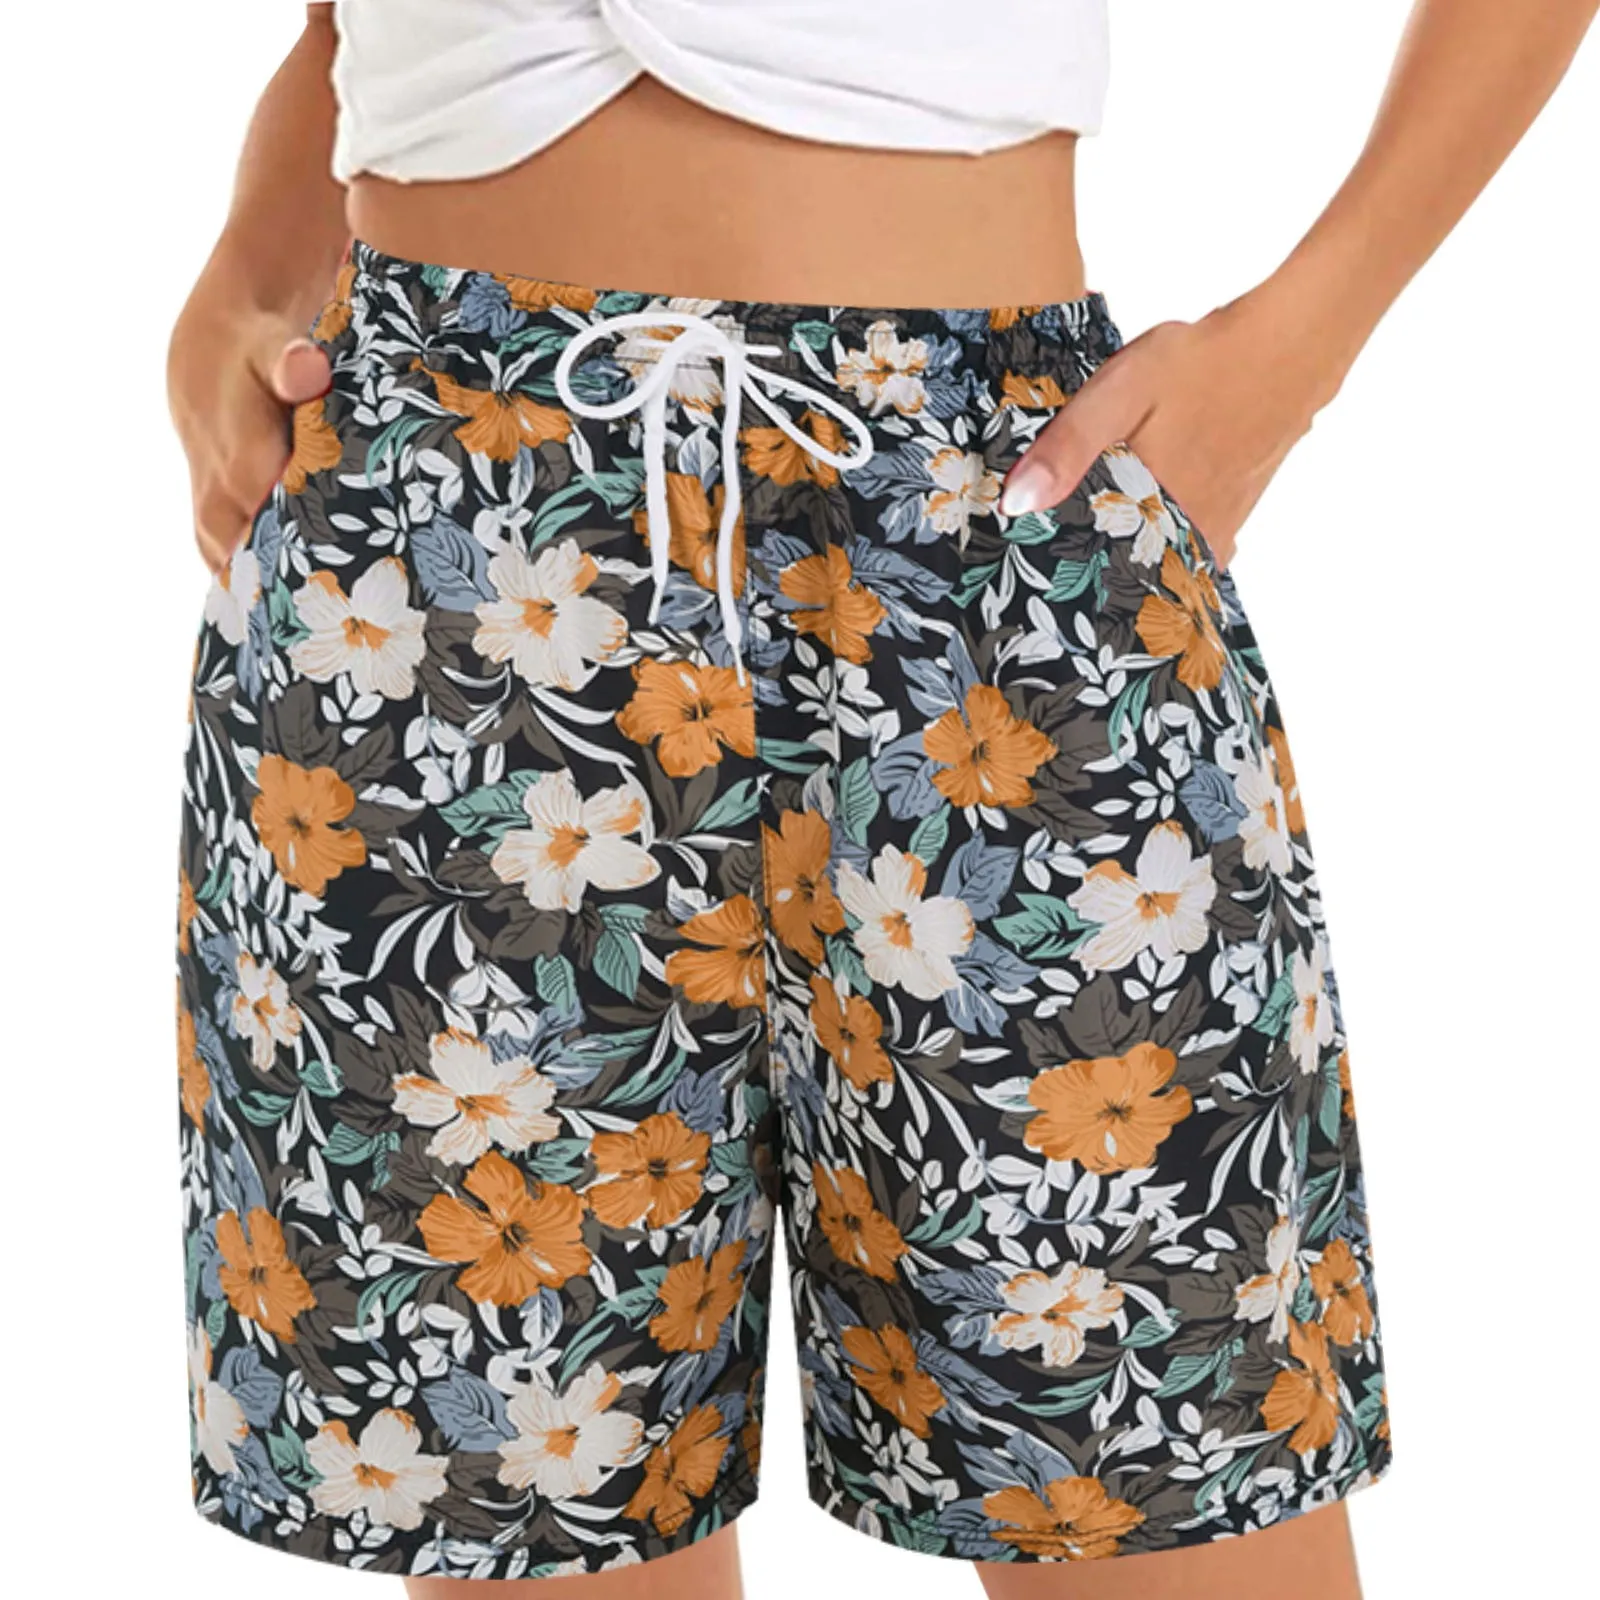 Novo verão praia shorts moda feminina bermuda confortável solto shorts casuais para mulher shorts de praia